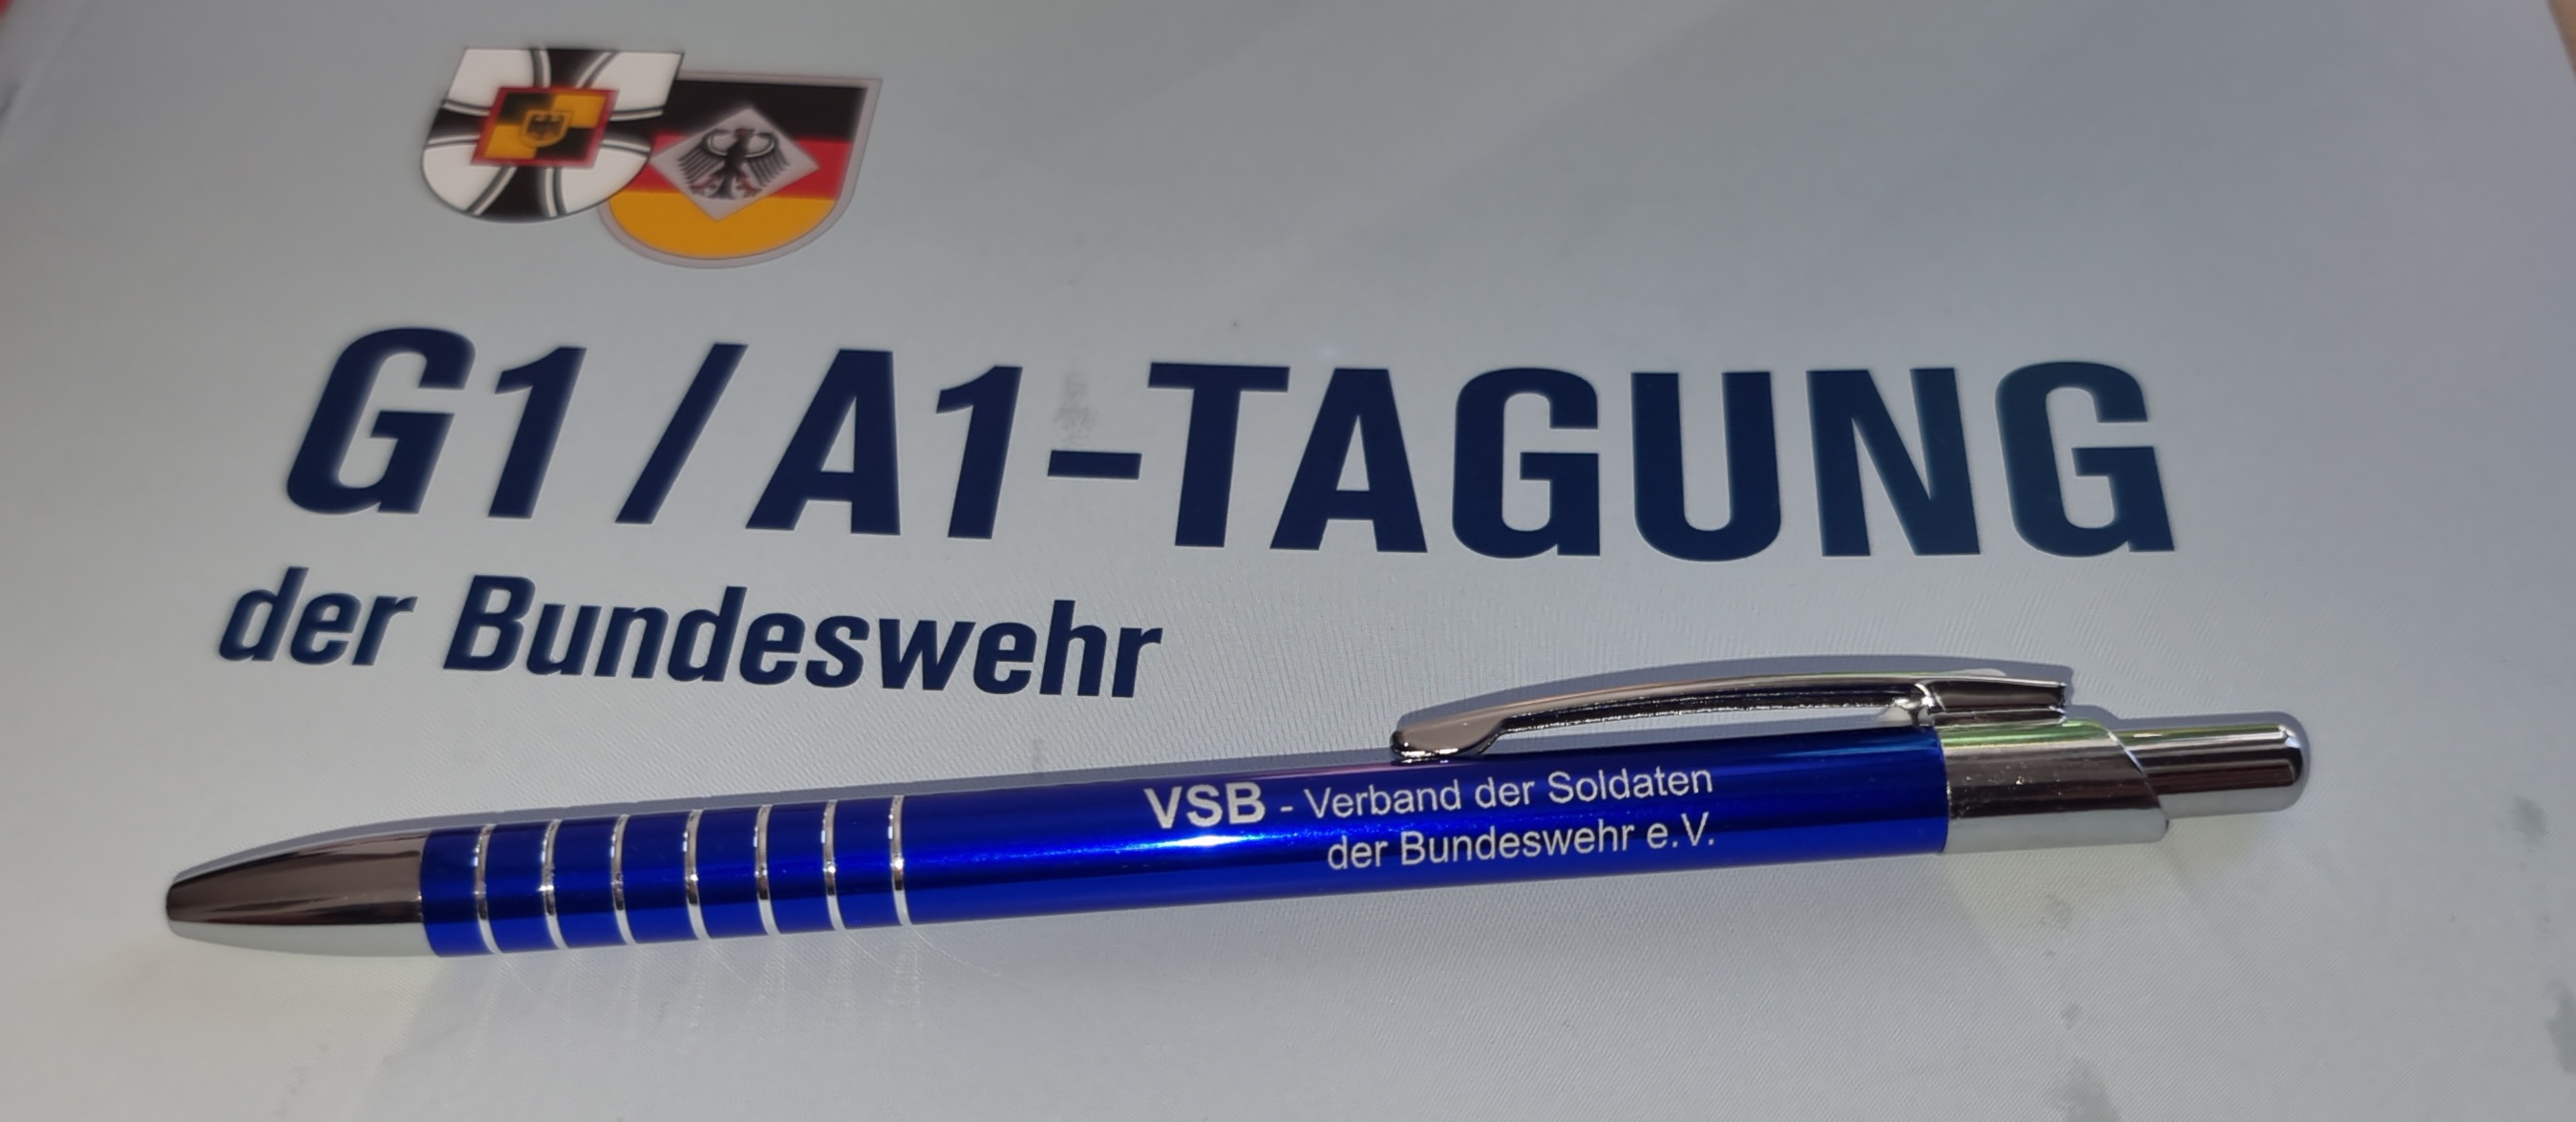 G1/A1 - Tagung der Bundeswehr